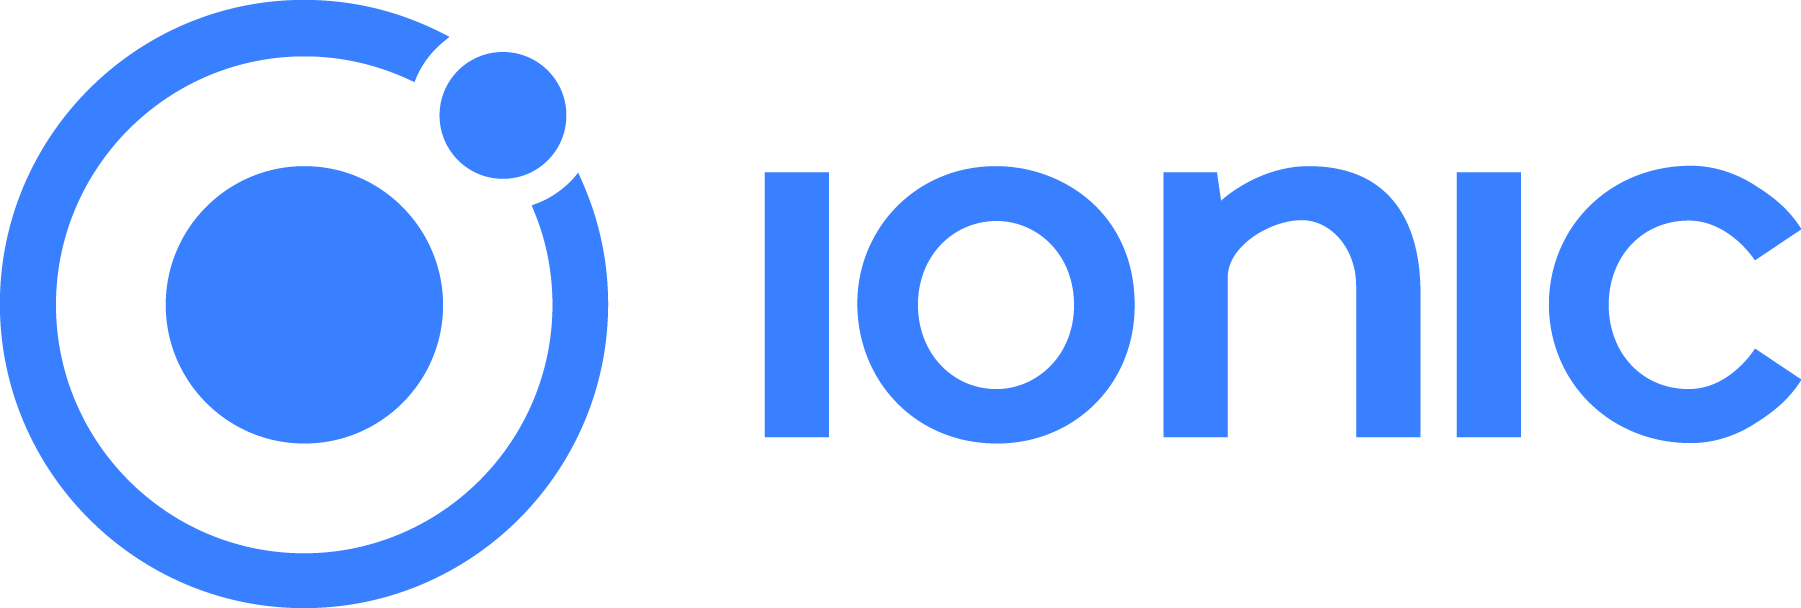 Ionic Logo png